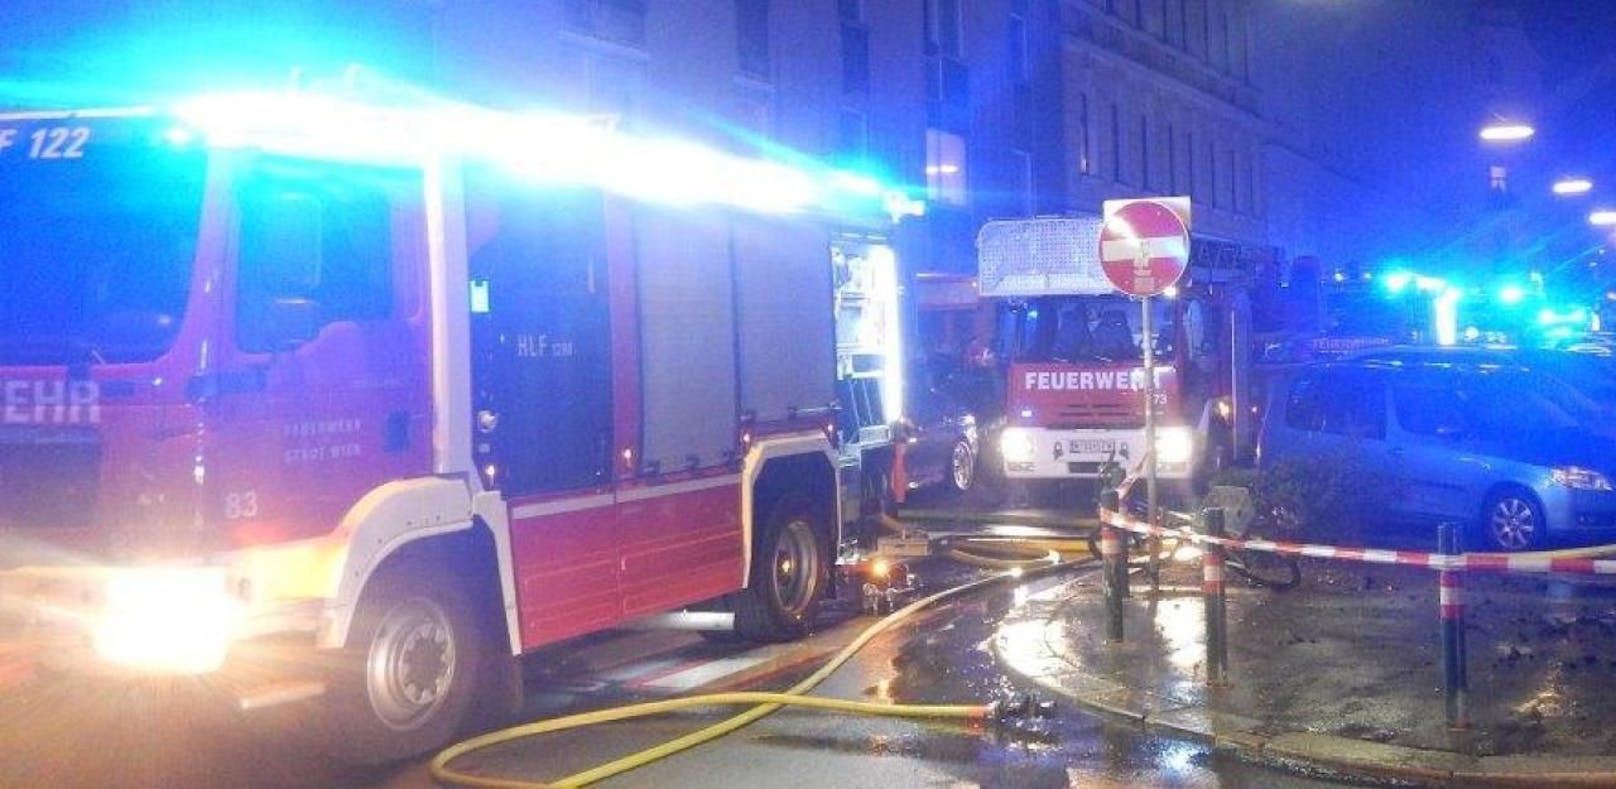 Zimmerbrand mit Todesfolge in Wien-Brigittenau am 7. Juni